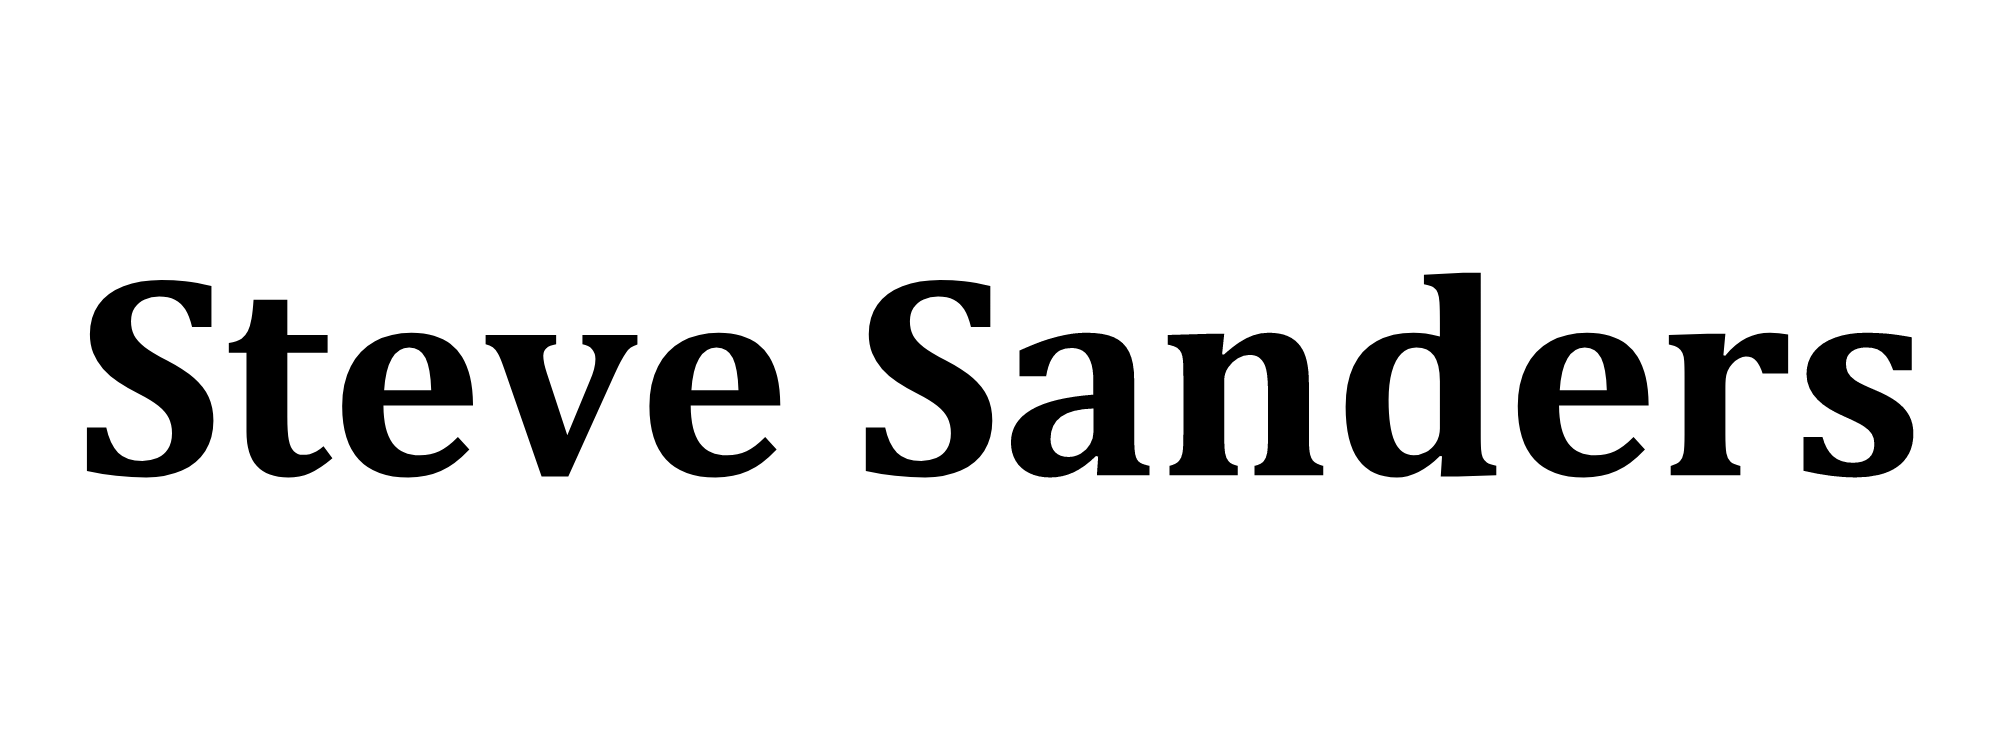 Steve Sanders logo.png